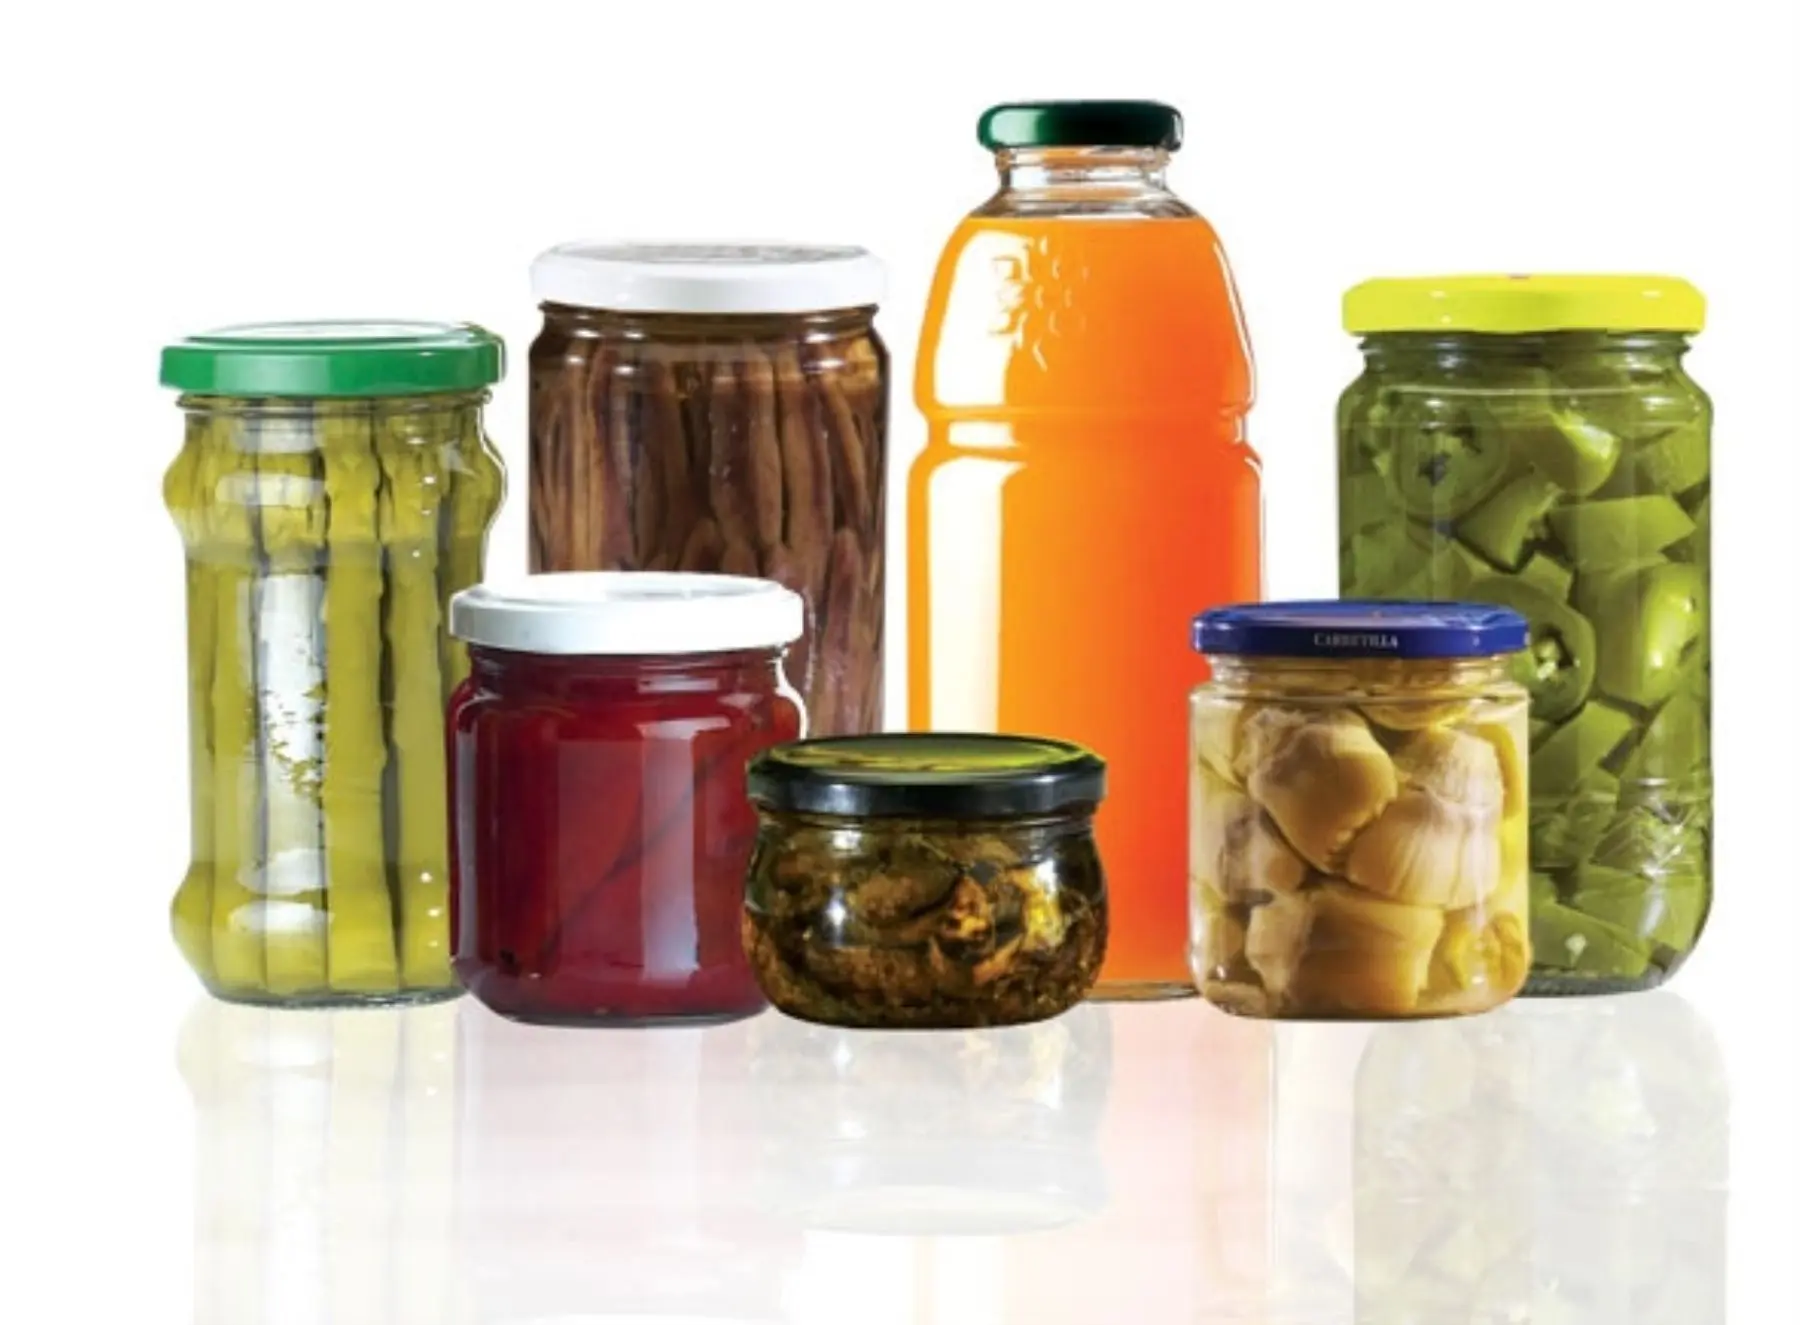 vidrio o plastico para conservar alimentos - Qué es mejor un tupper de vidrio o plástico